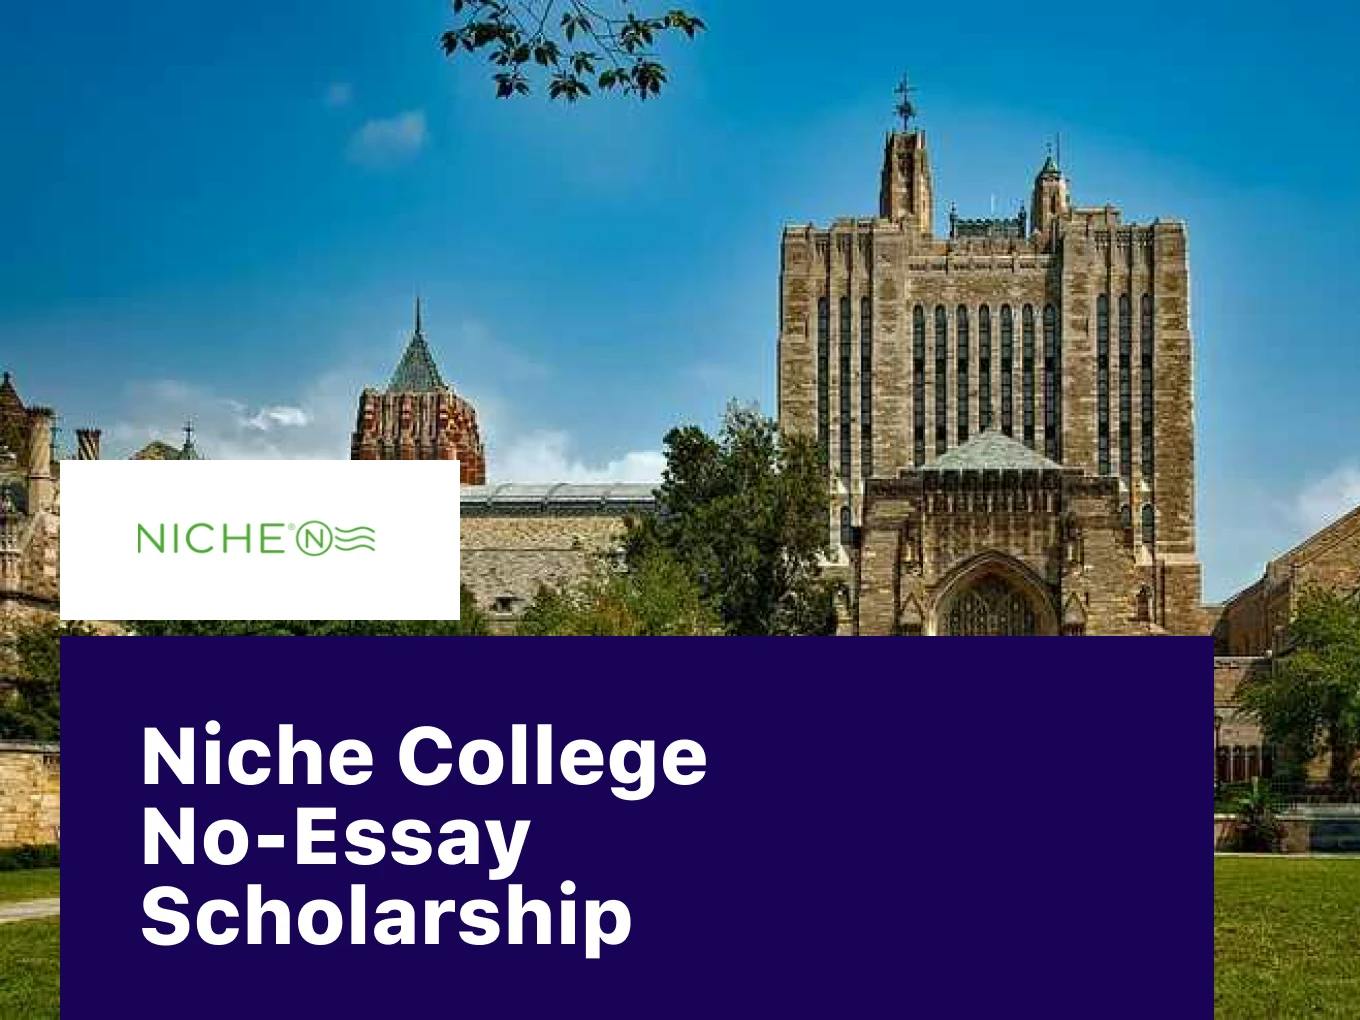 Niche College No-Essay Scholarship